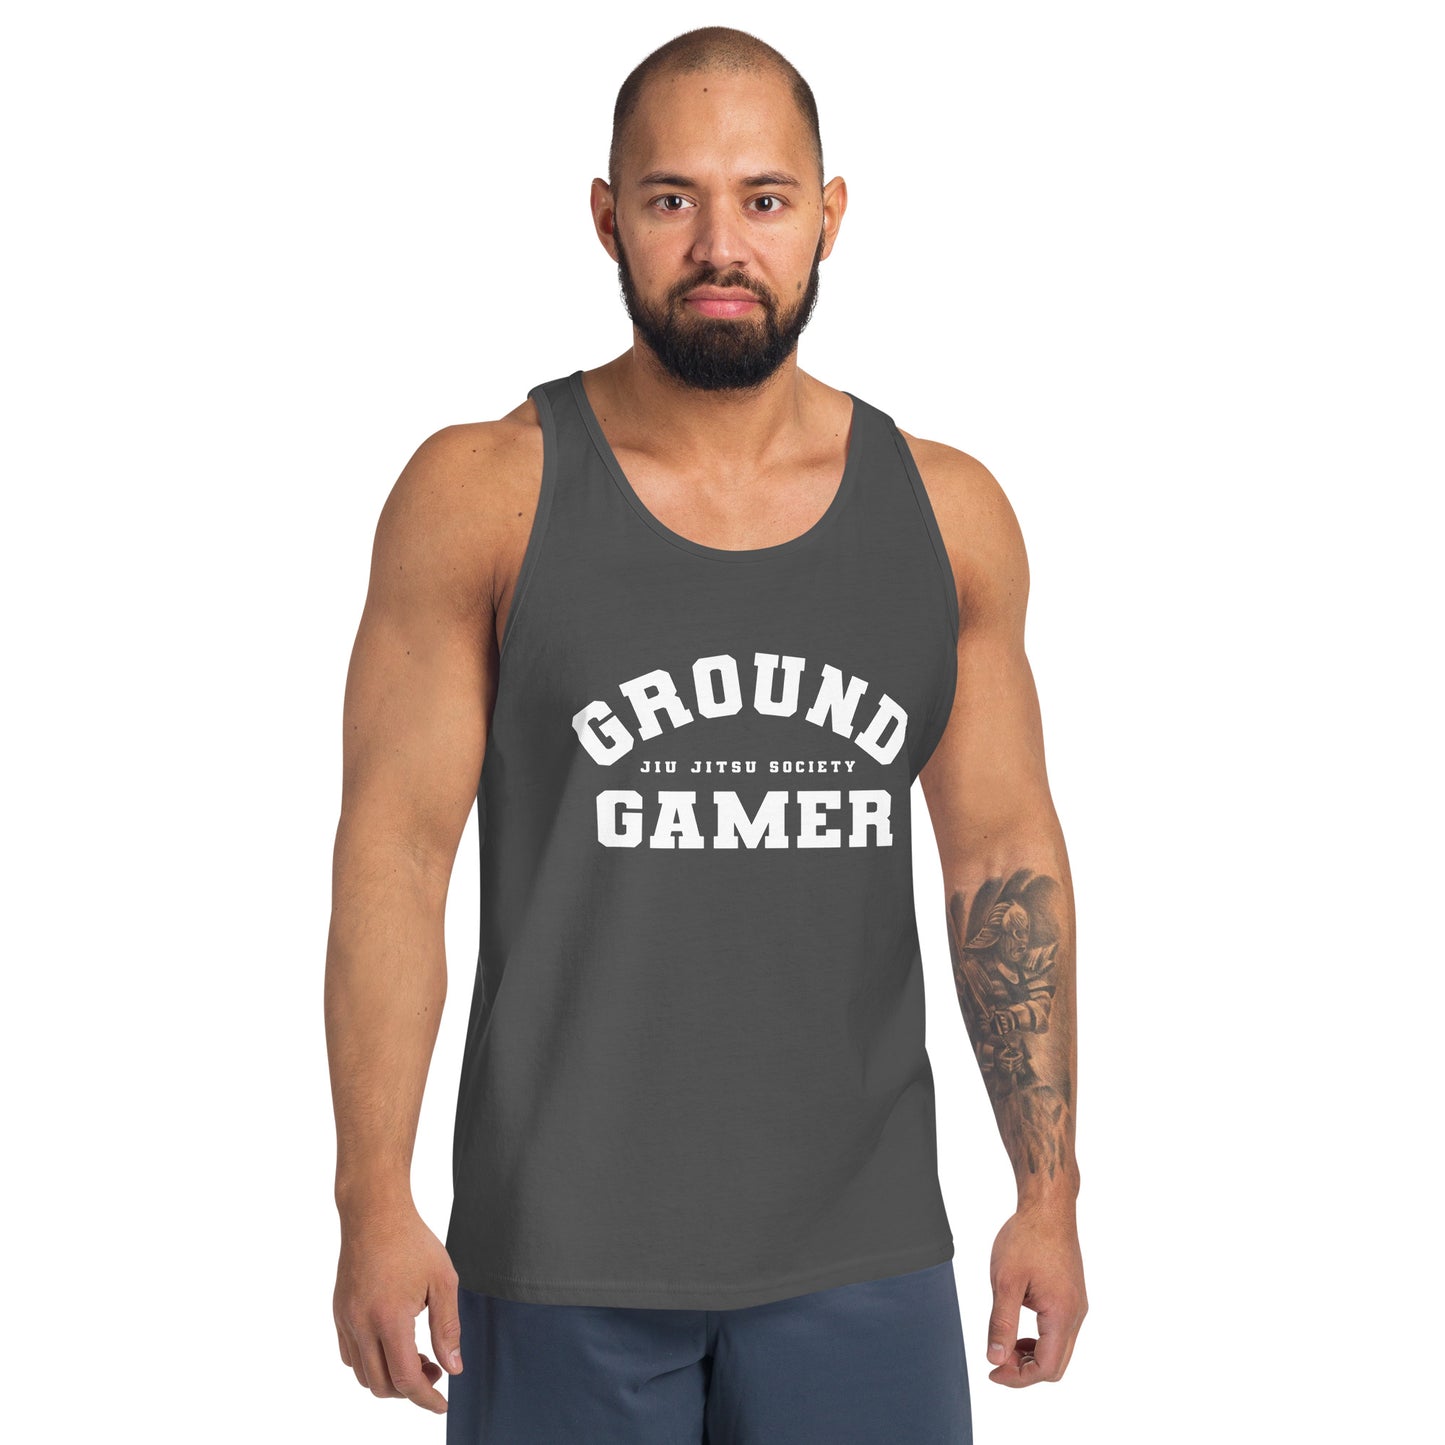 Men's Ground Gamer Tank Top